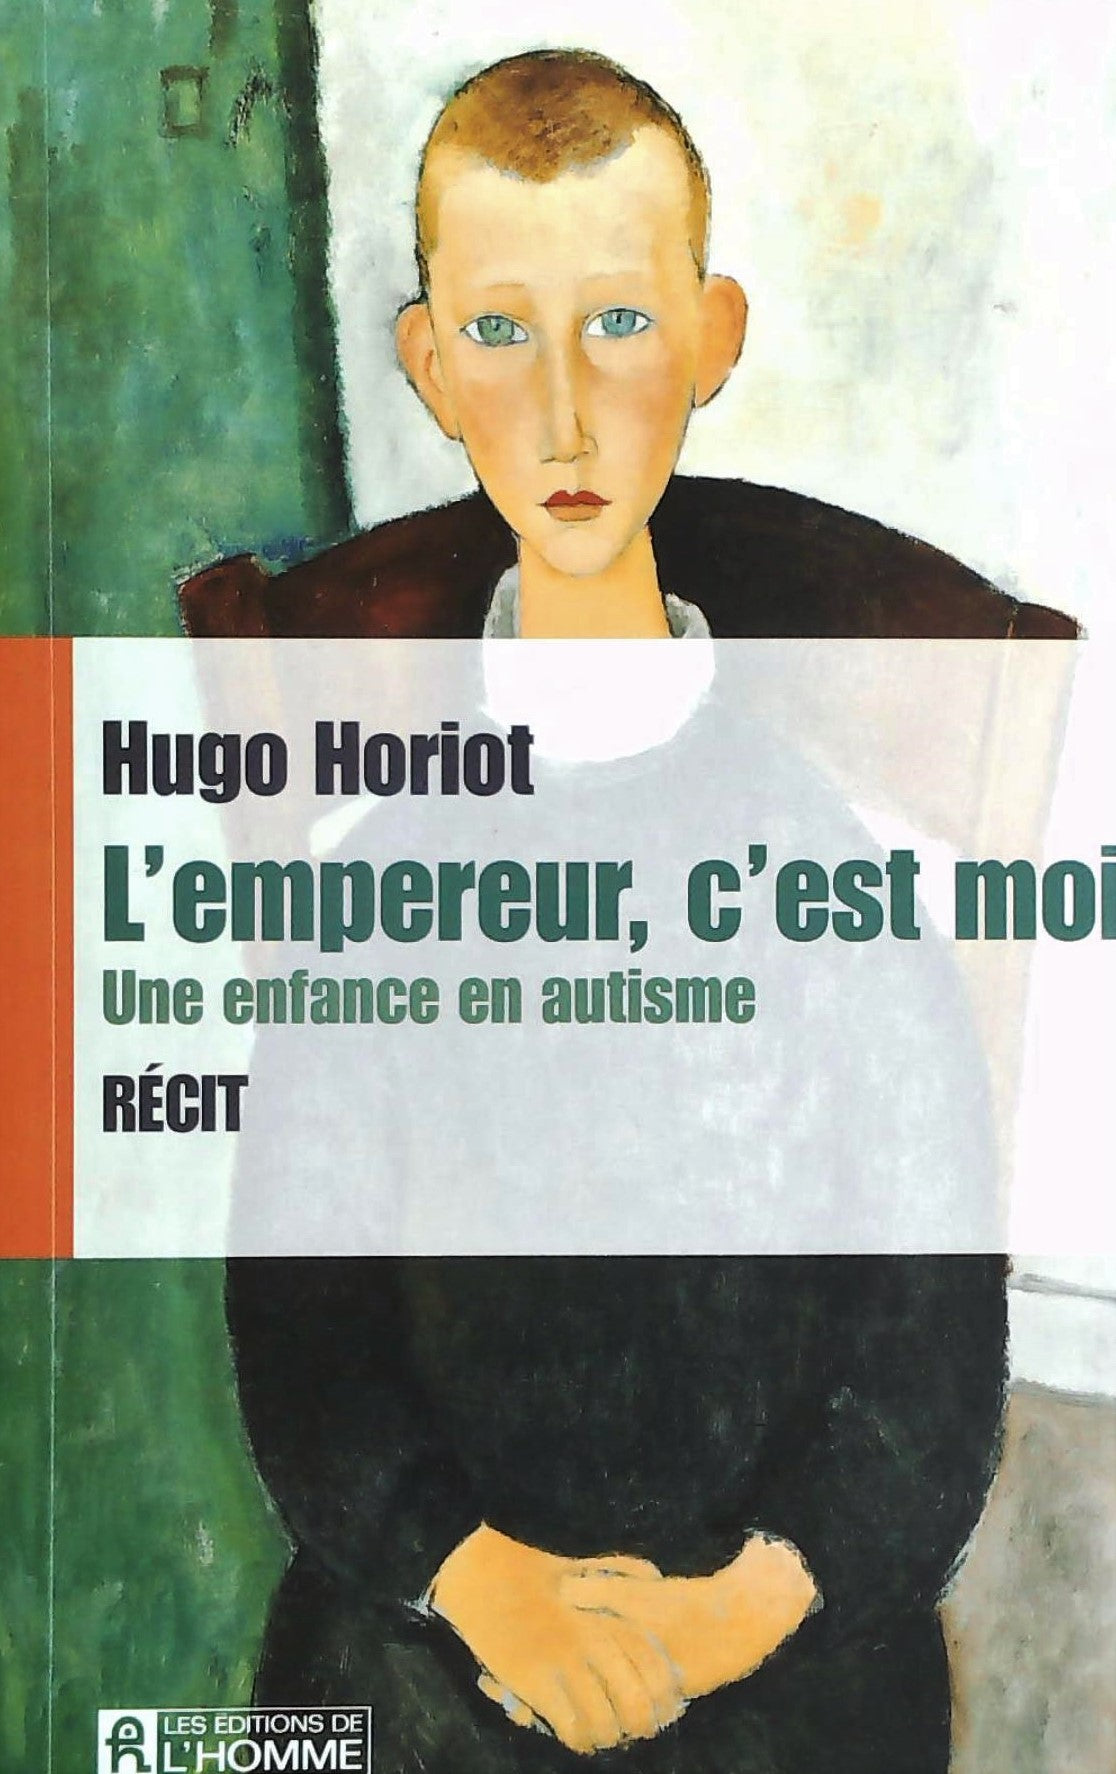 Livre ISBN 2761939166 L'empereur, c'est moi : Une enfance en autisme (Hugo Horiot)